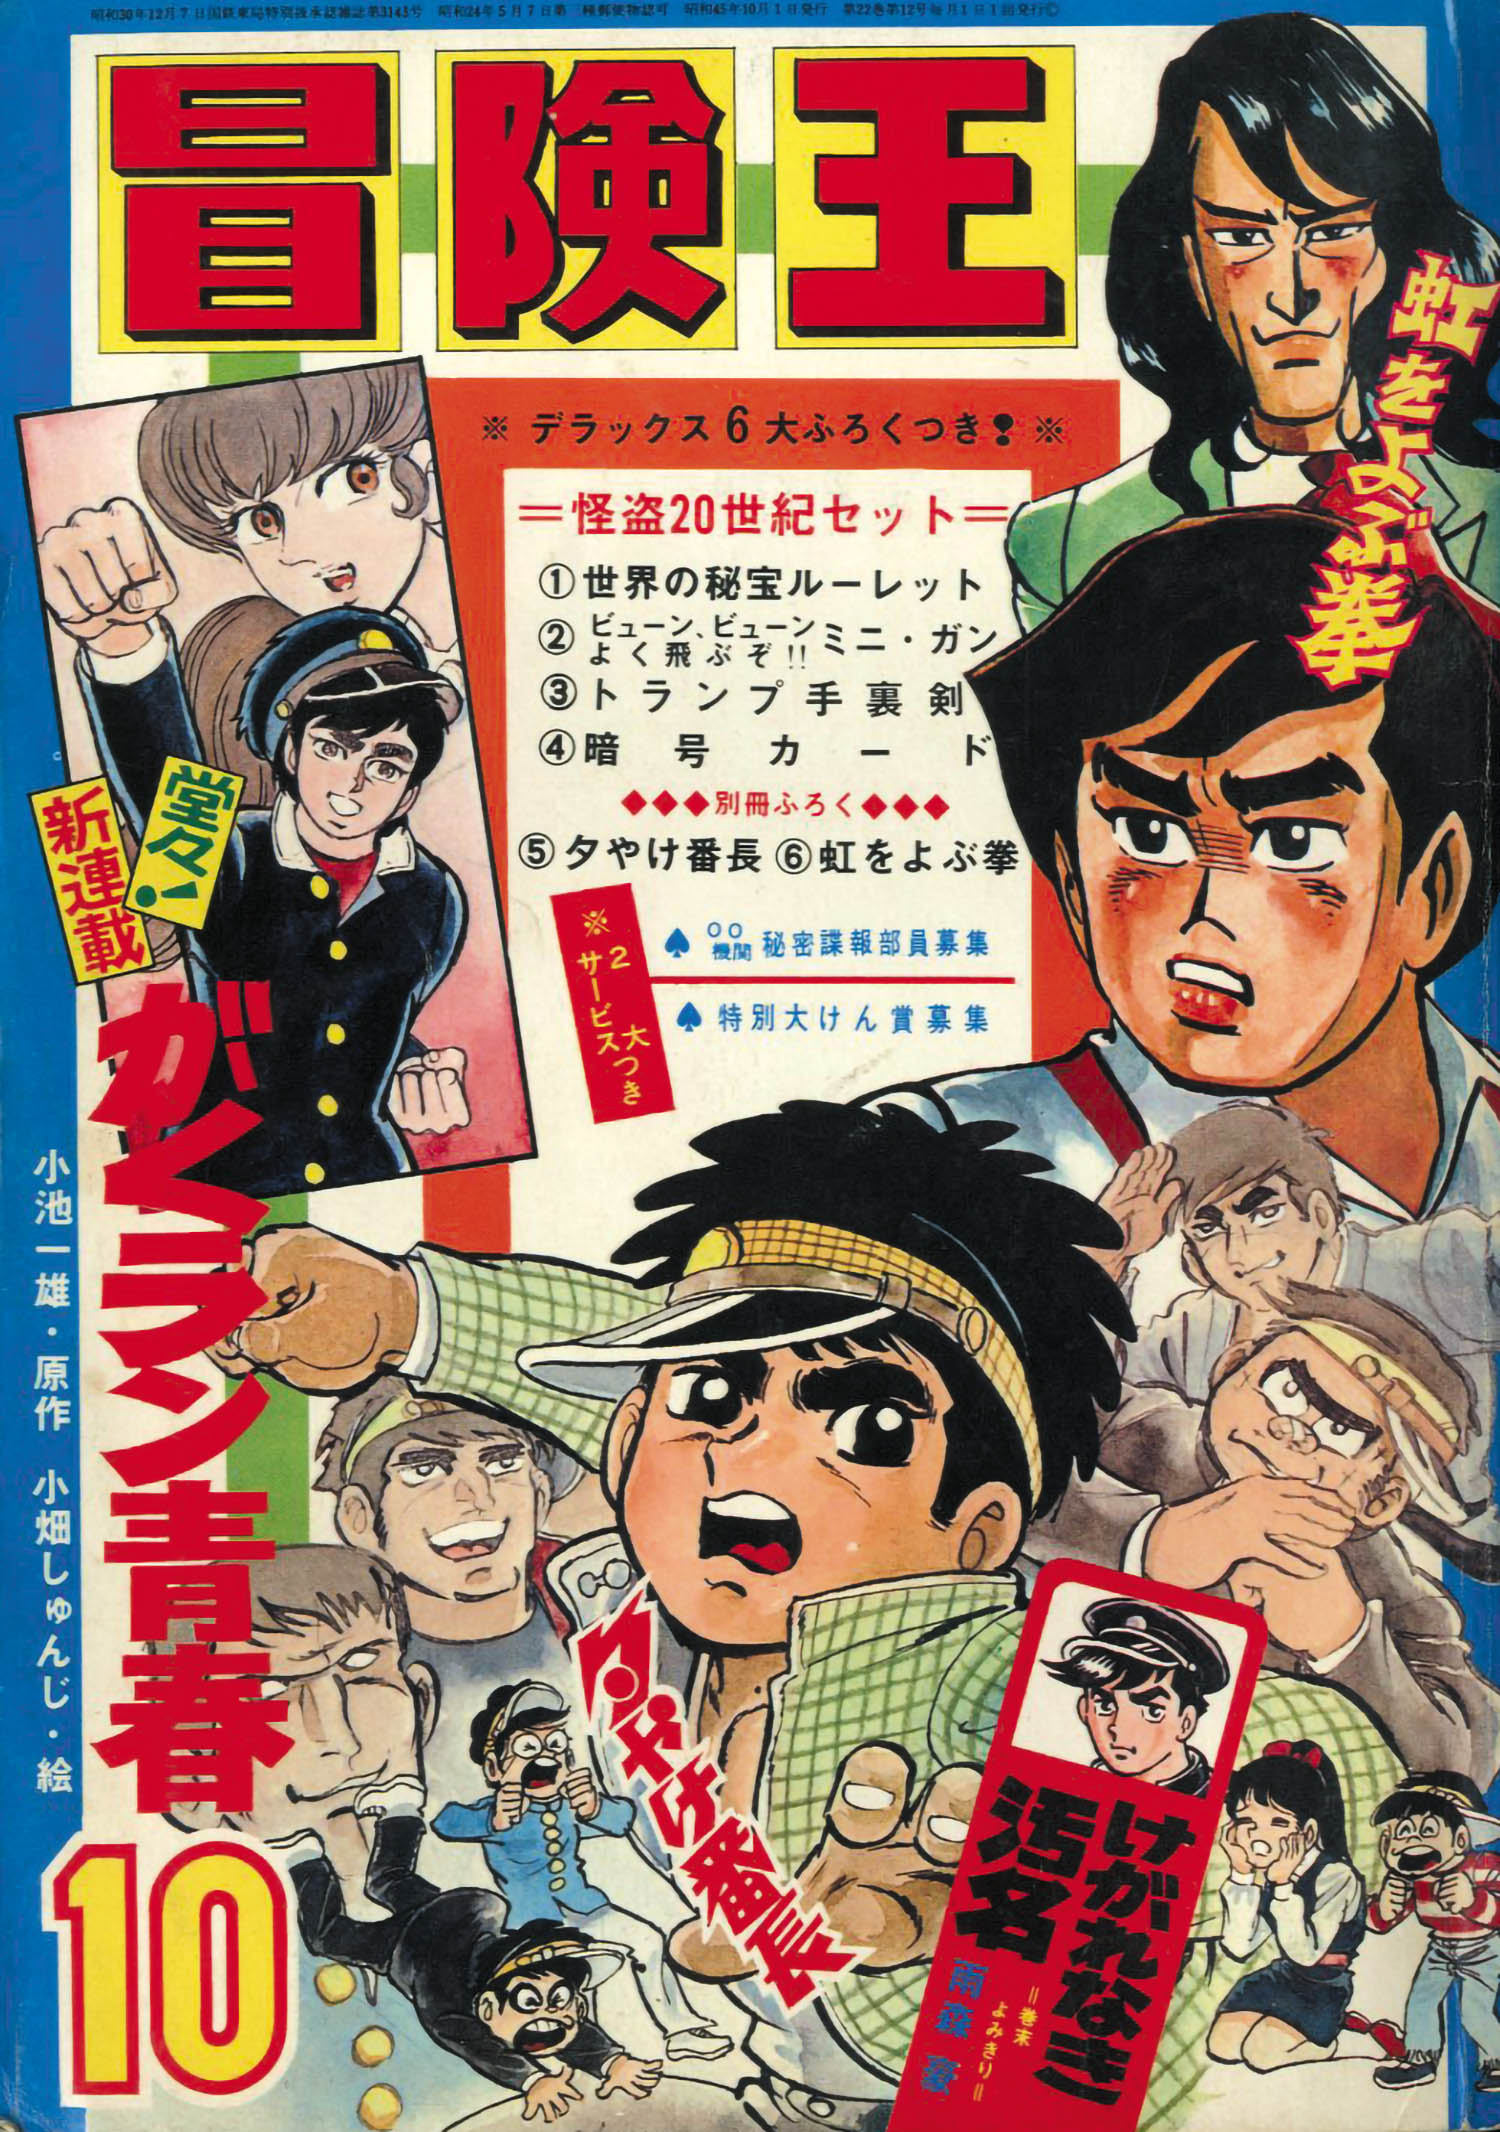 秋田書店 1970年(昭和45年)の漫画雑誌 『冒険王 1970年(昭和45年)10月